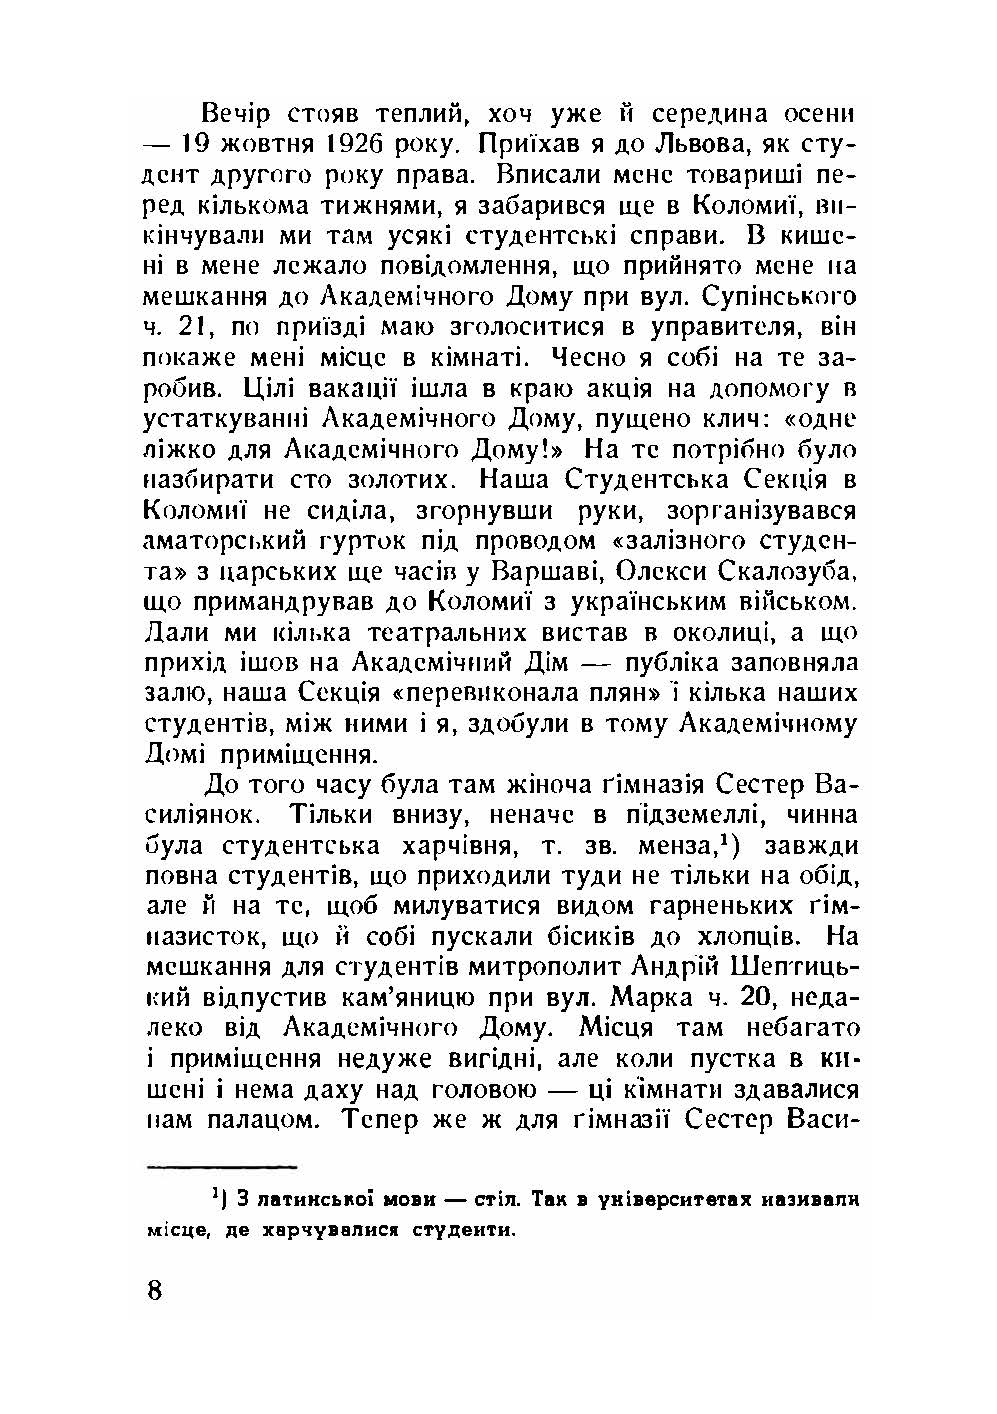 Далекий приціл. Українська військова організація в 1927-1929 роках. Автор — Книш Зіновій. 